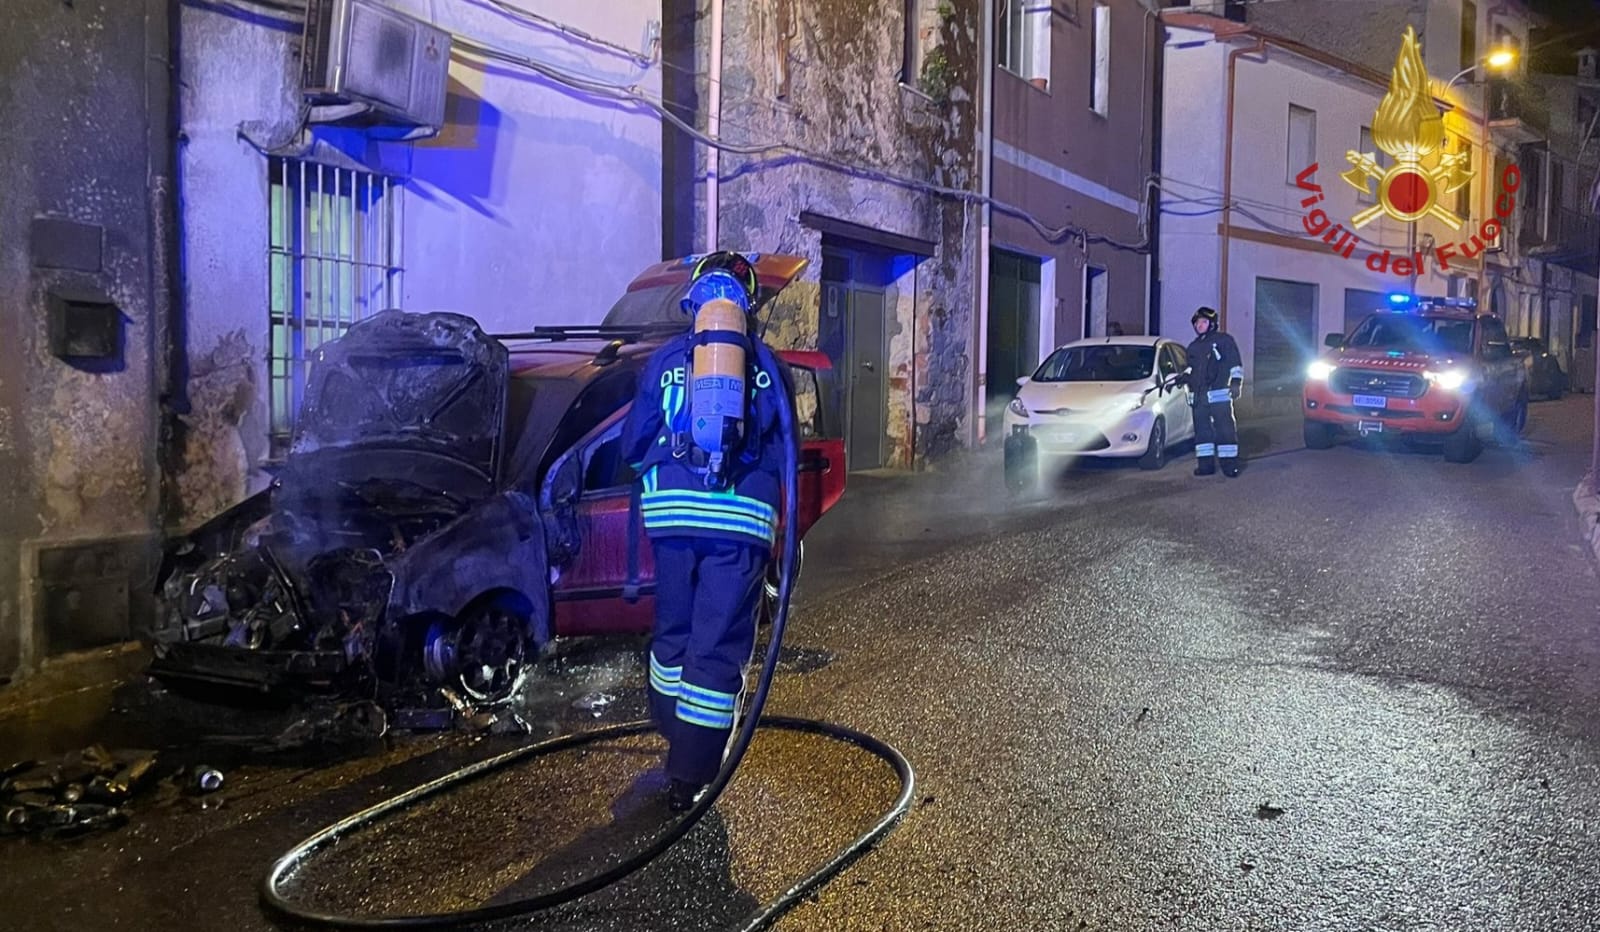 Tragedia sfiorata a Burgos. In fiamme un’auto: al suo interno era riposta una bombola GPL